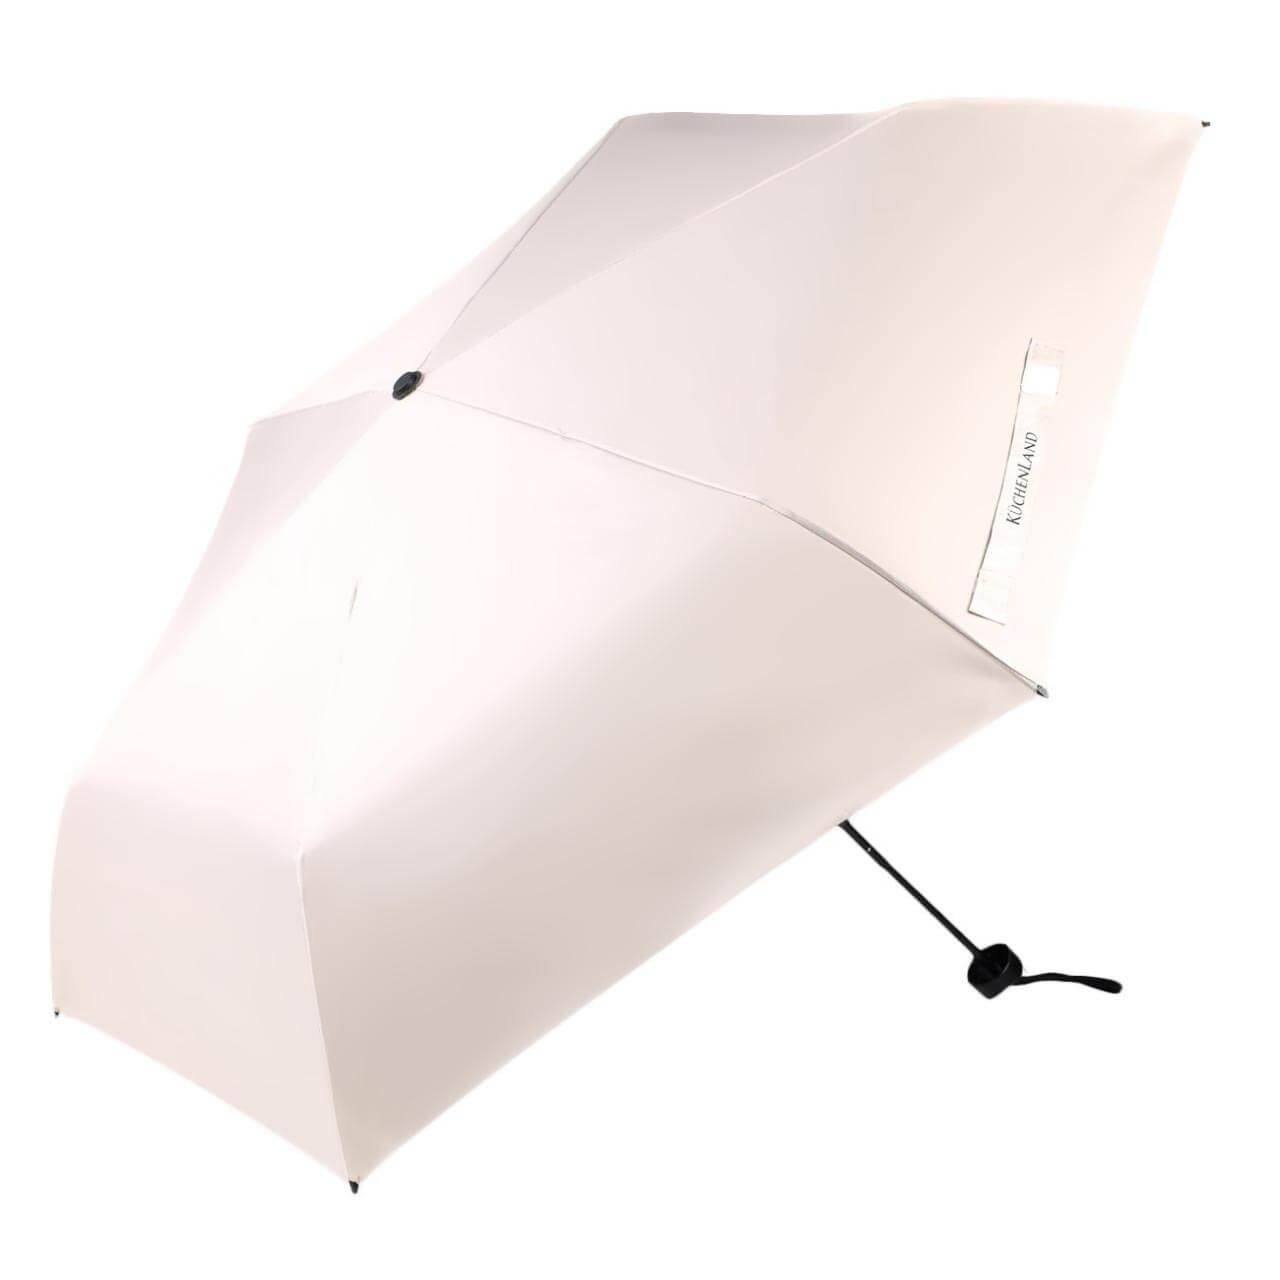 Зонт, 52 см, складной, двусторонний, эпонж, бежево-черный, Rainy day шабер двусторонний лопатка вогнутая 13 см на блистере серебристый